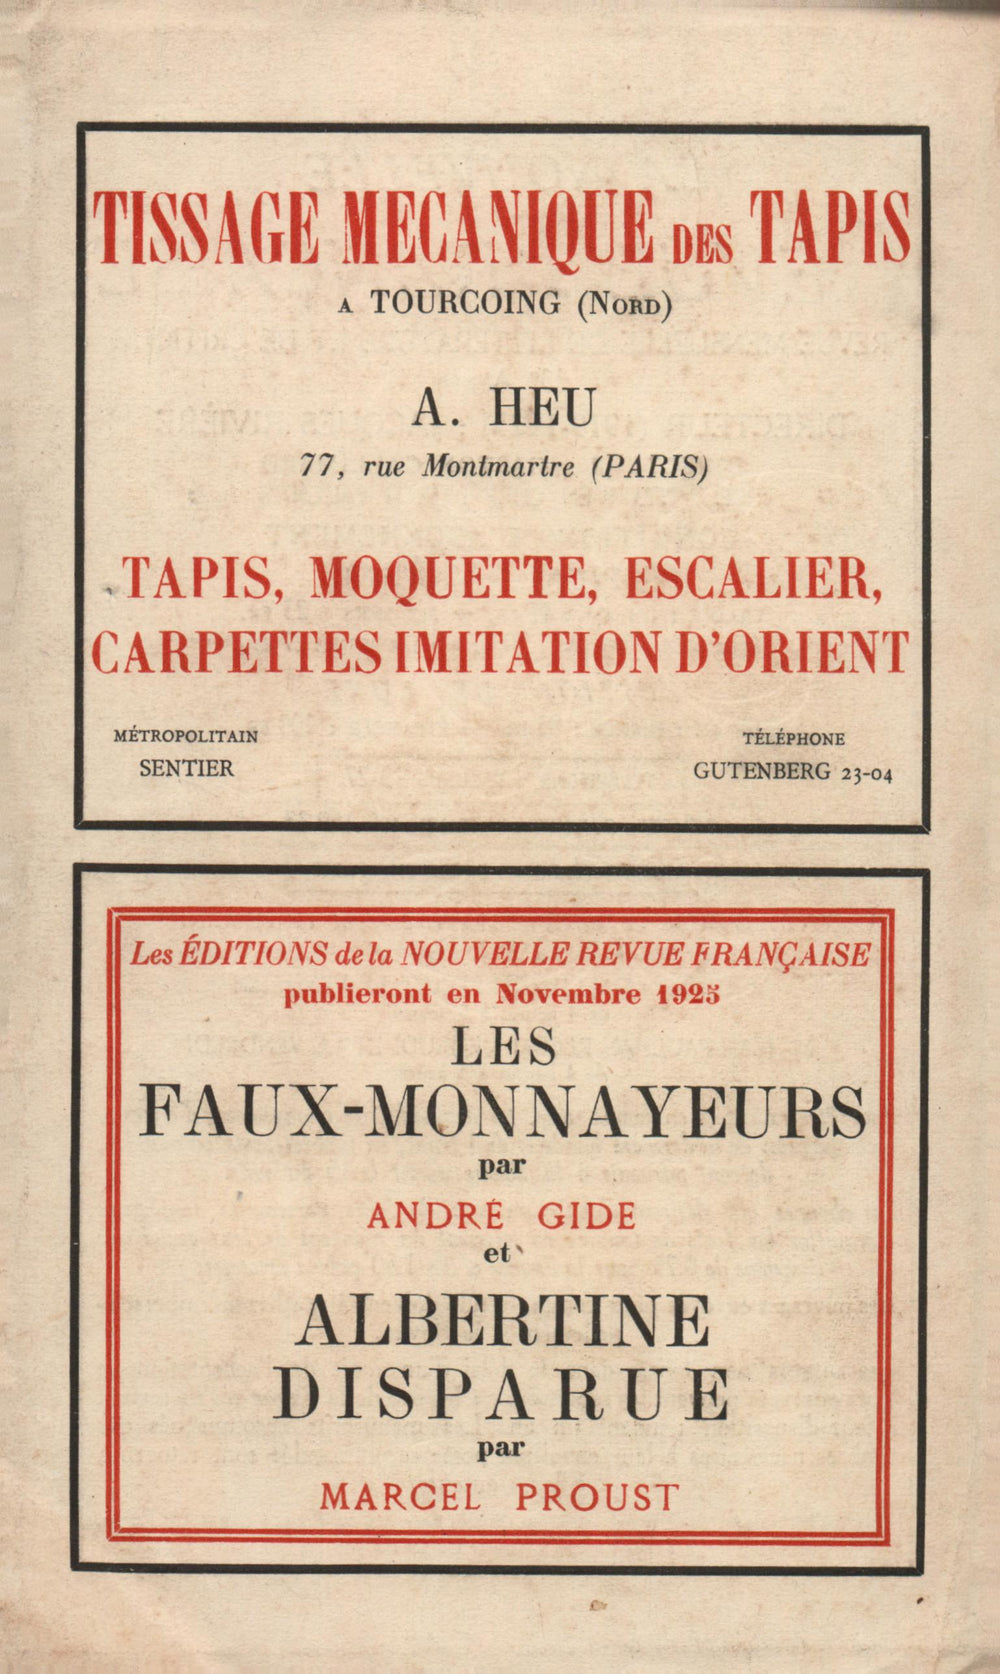 La Nouvelle Revue Française N' 145 (Octobre 1925)